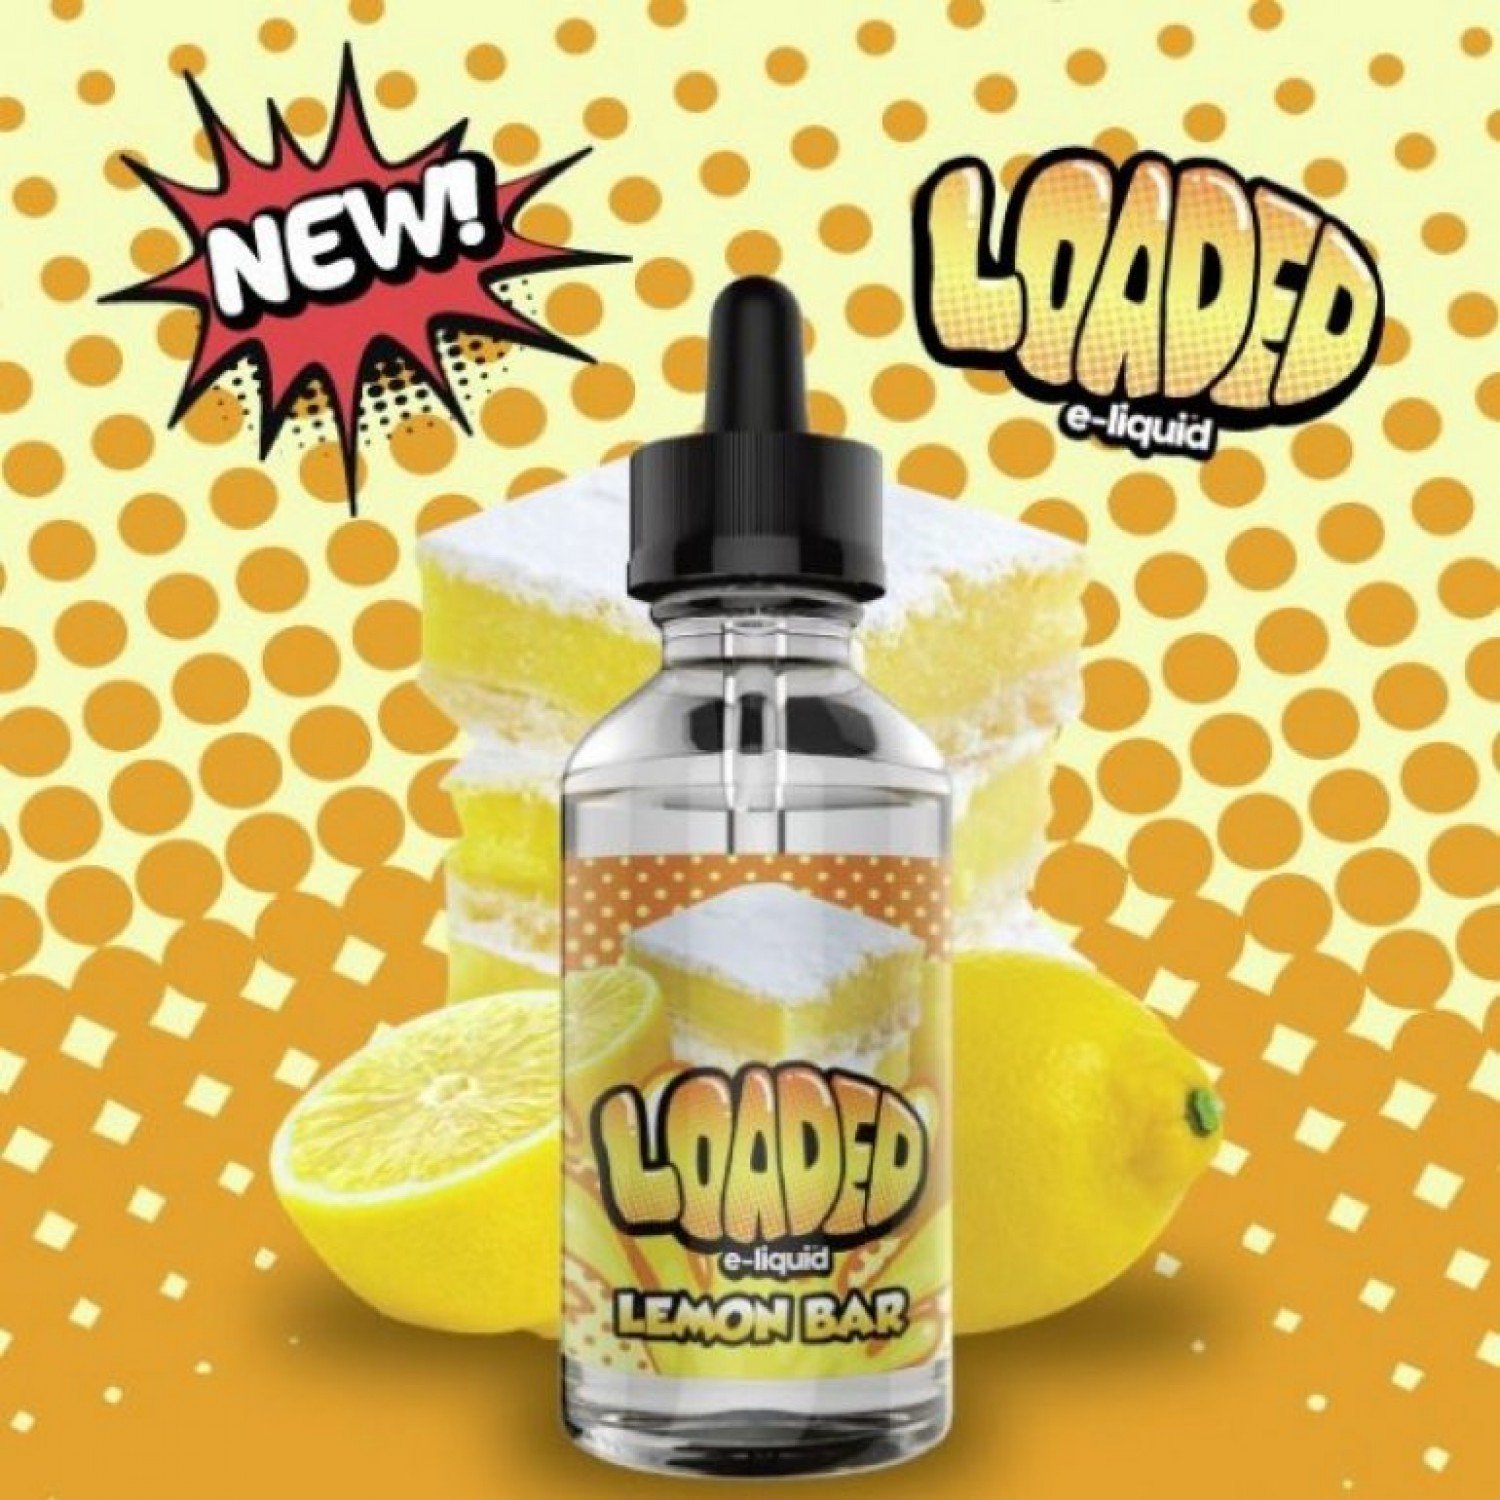 Loaded - Lemon Bar 120 ML. Premium Likit